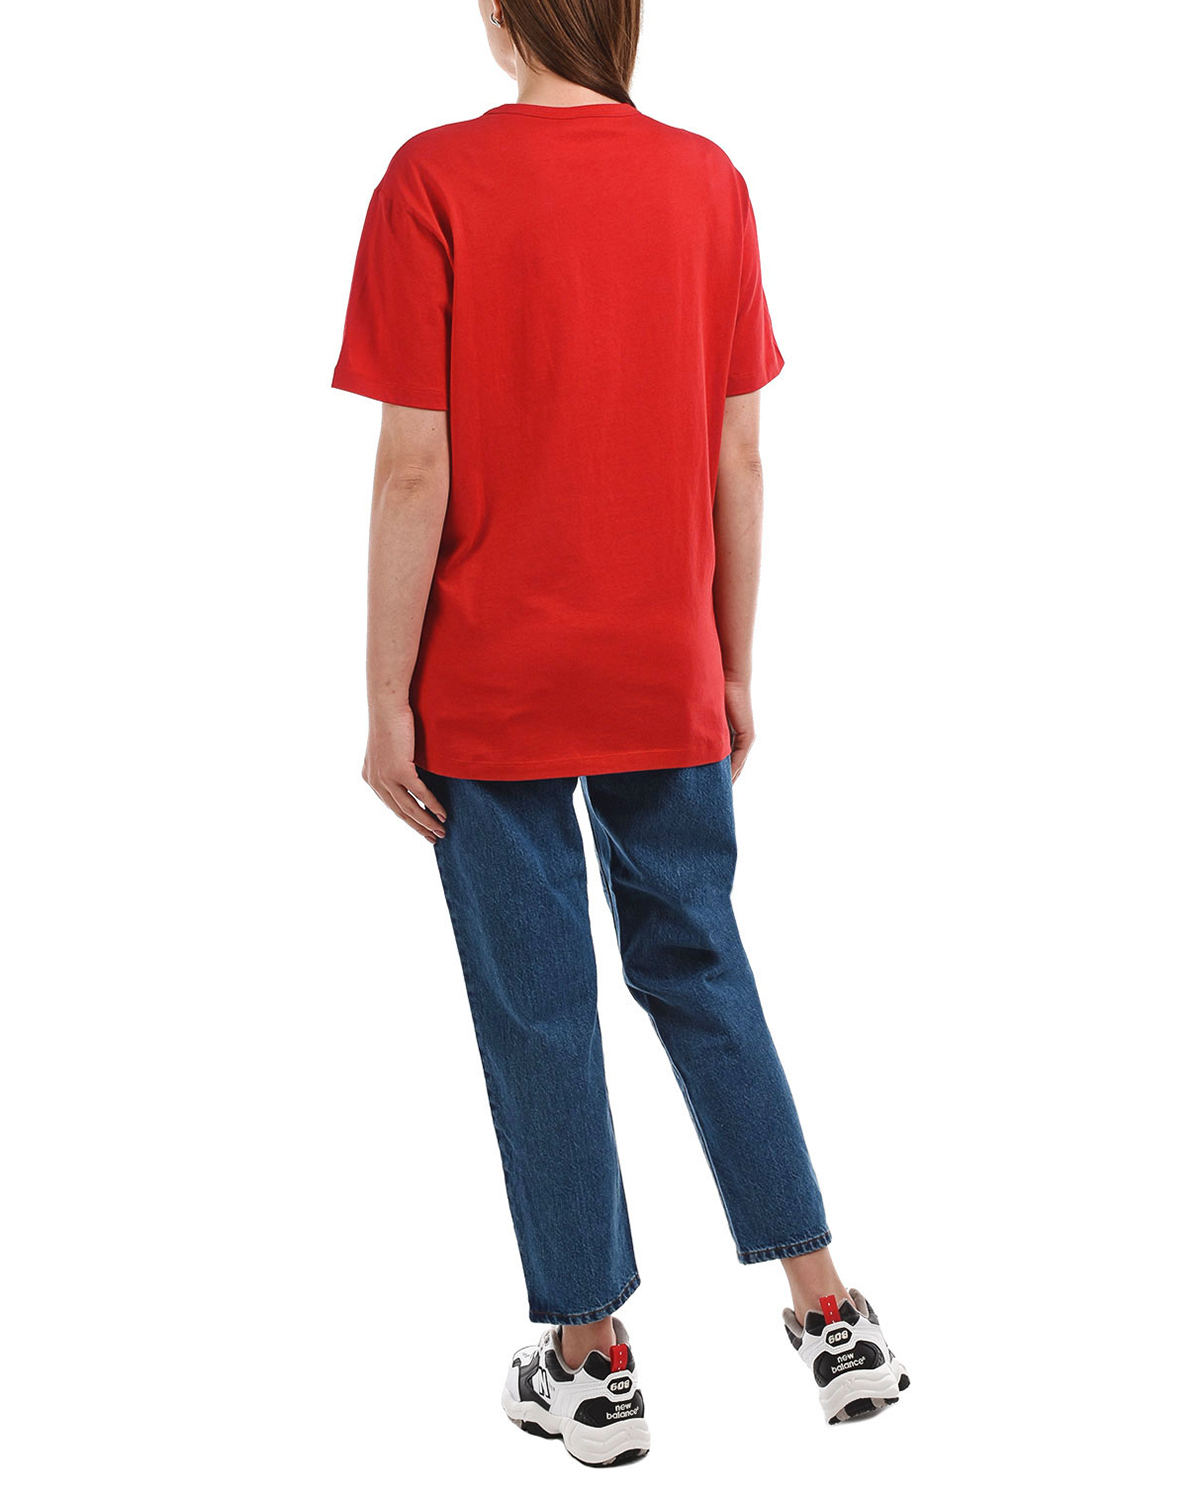 Красная базовая футболка с логотипом No. 21, размер 40, цвет красный - фото 3